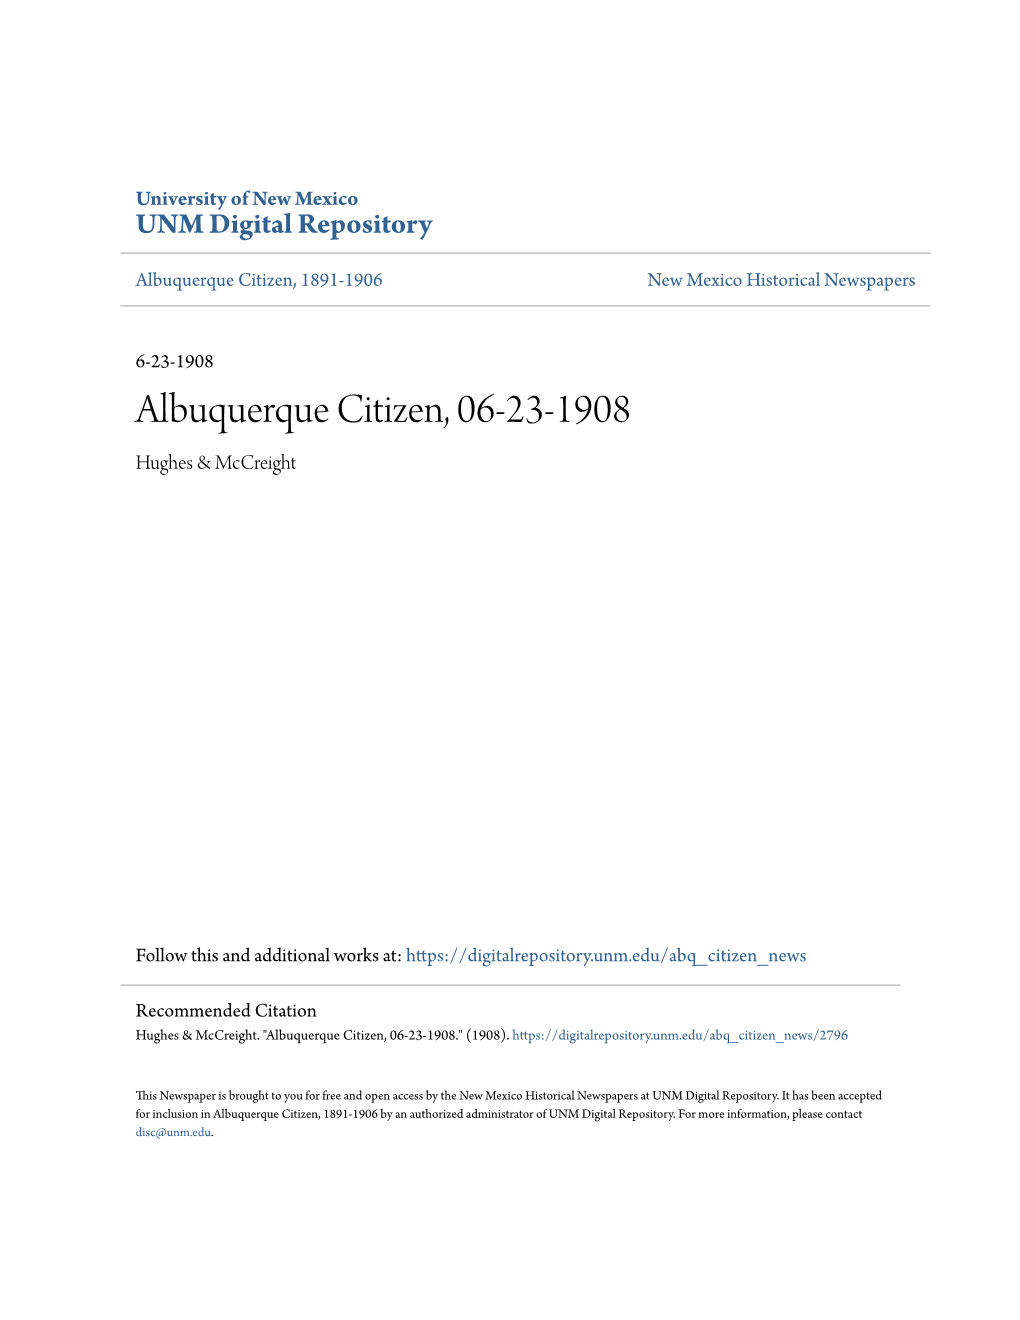 Albuquerque Citizen, 06-23-1908 Hughes & Mccreight